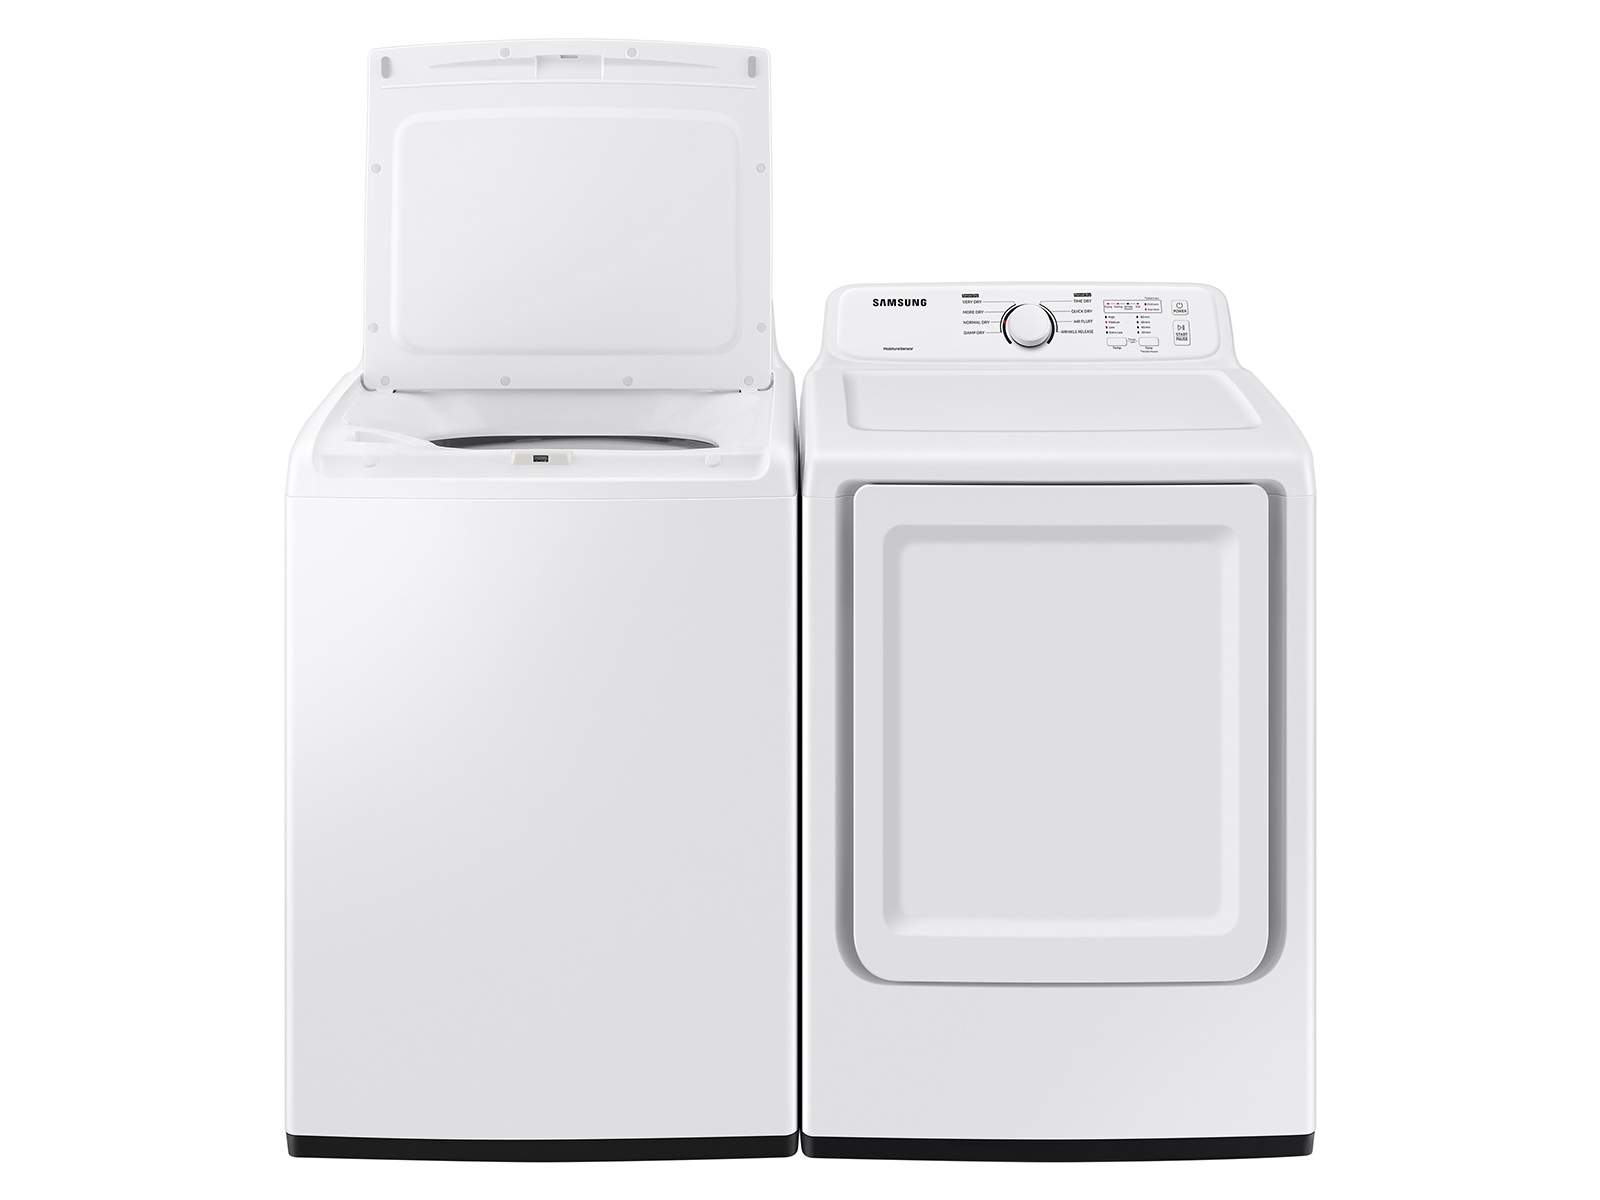 7.2 cu. ft. Secadora con sensor de secado y 8 ciclos de secado en secadoras blancas - DVE41A3000W/A3 | Samsung EE.UU